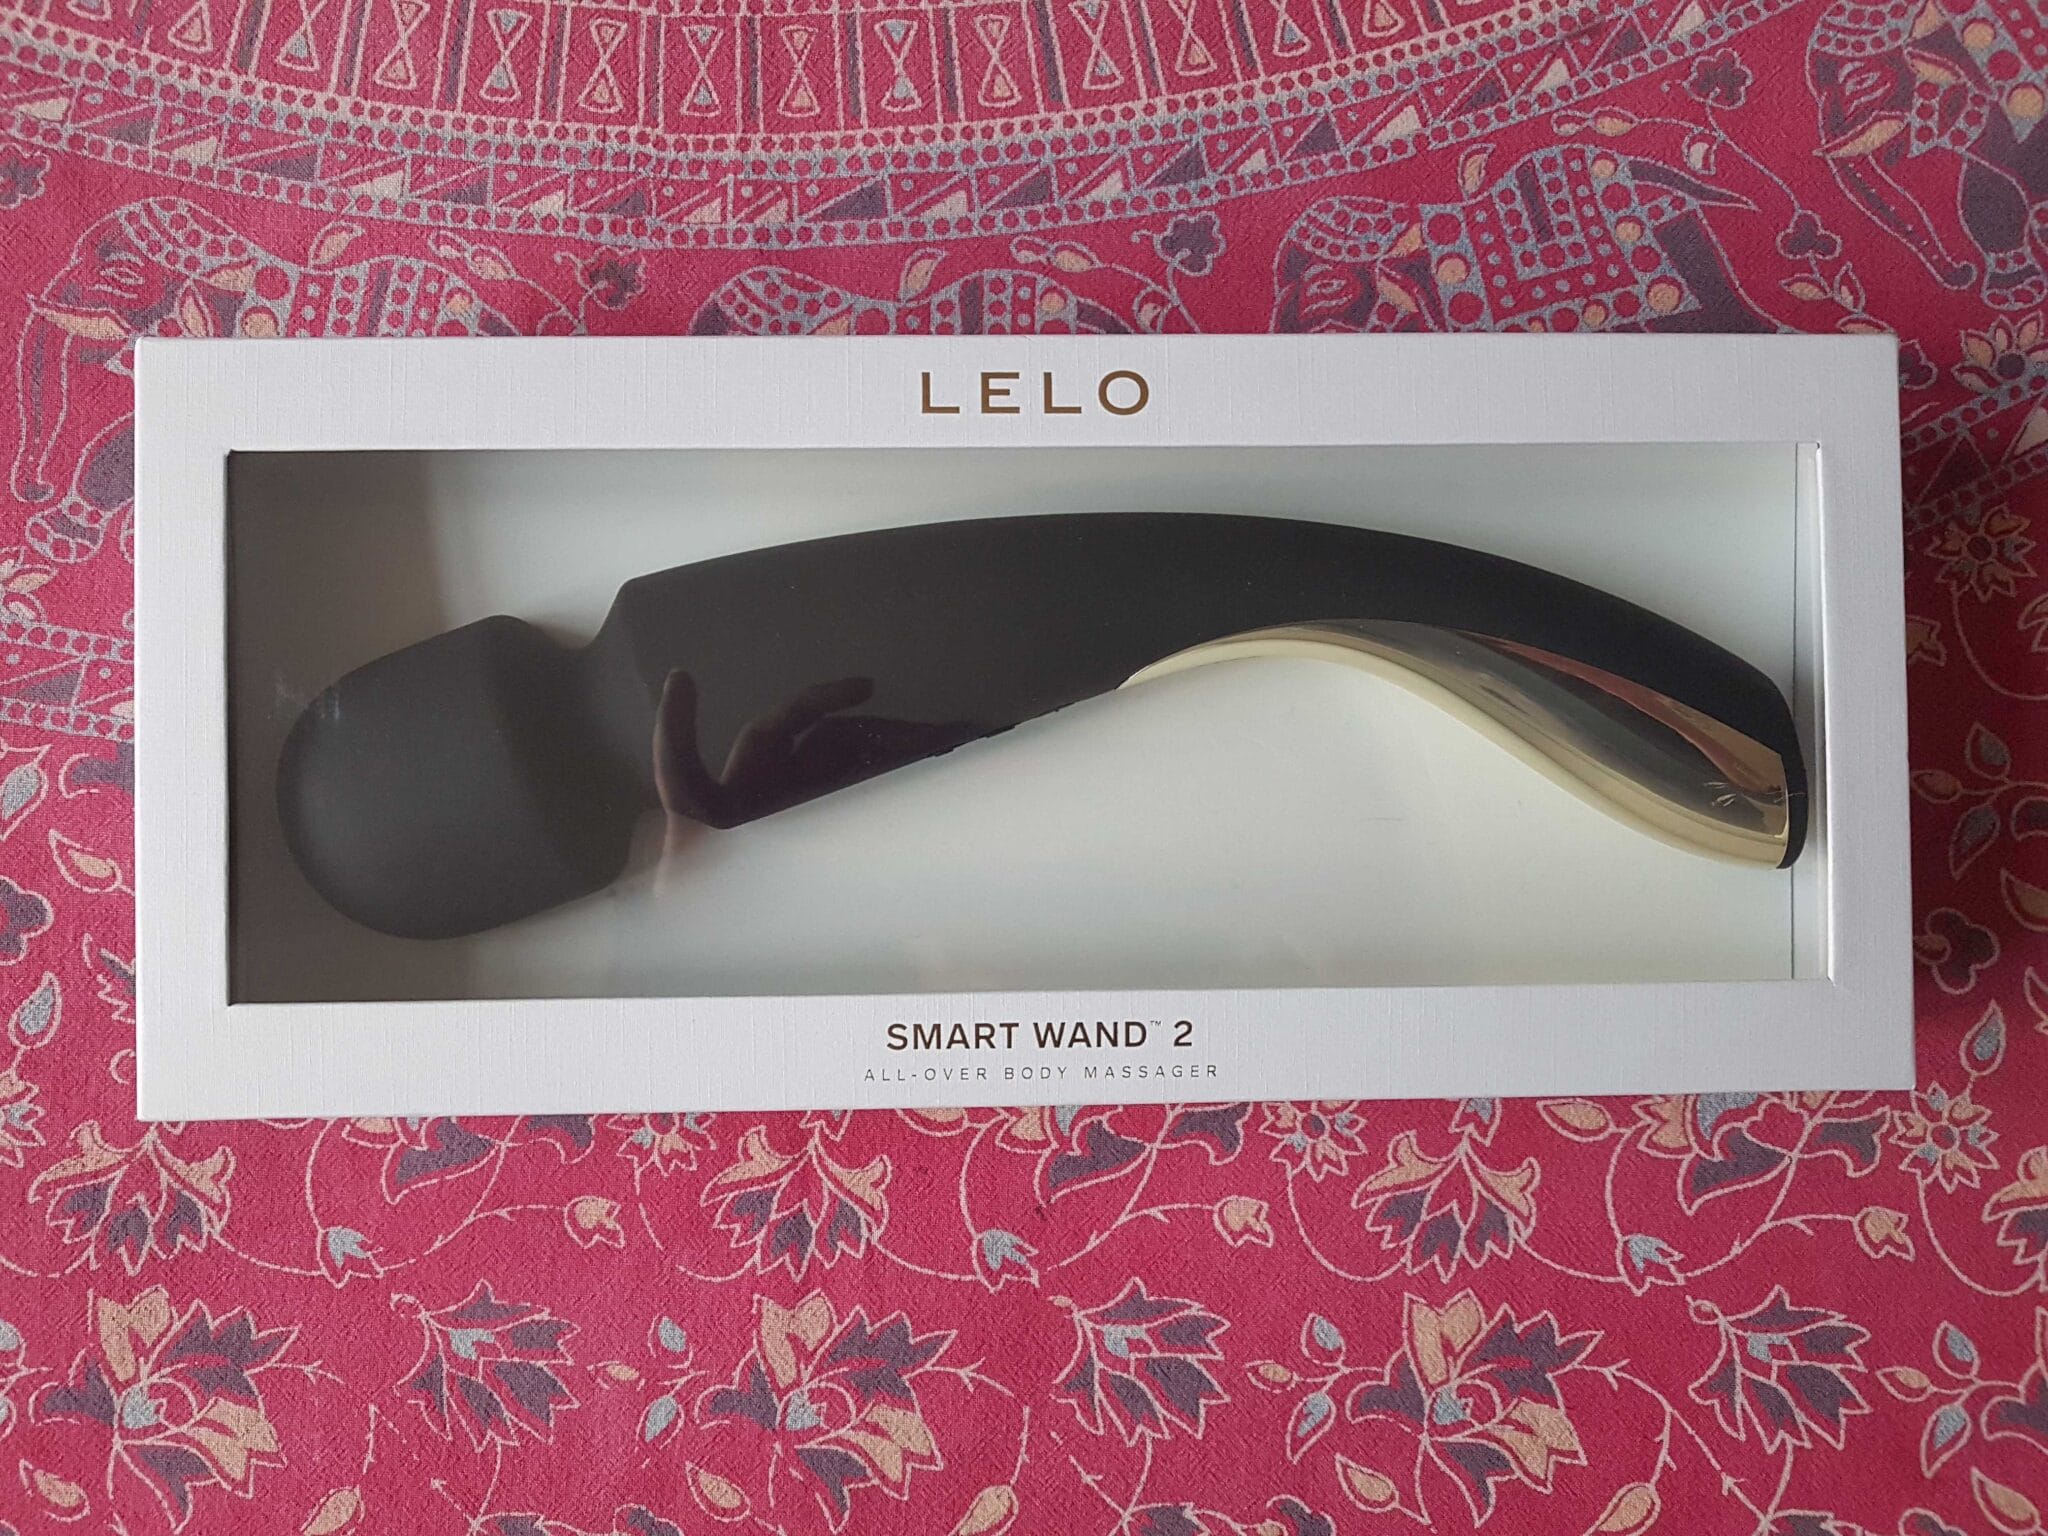 Lelo Smart Wand 2 Large Packaging: An Unsung Hero?